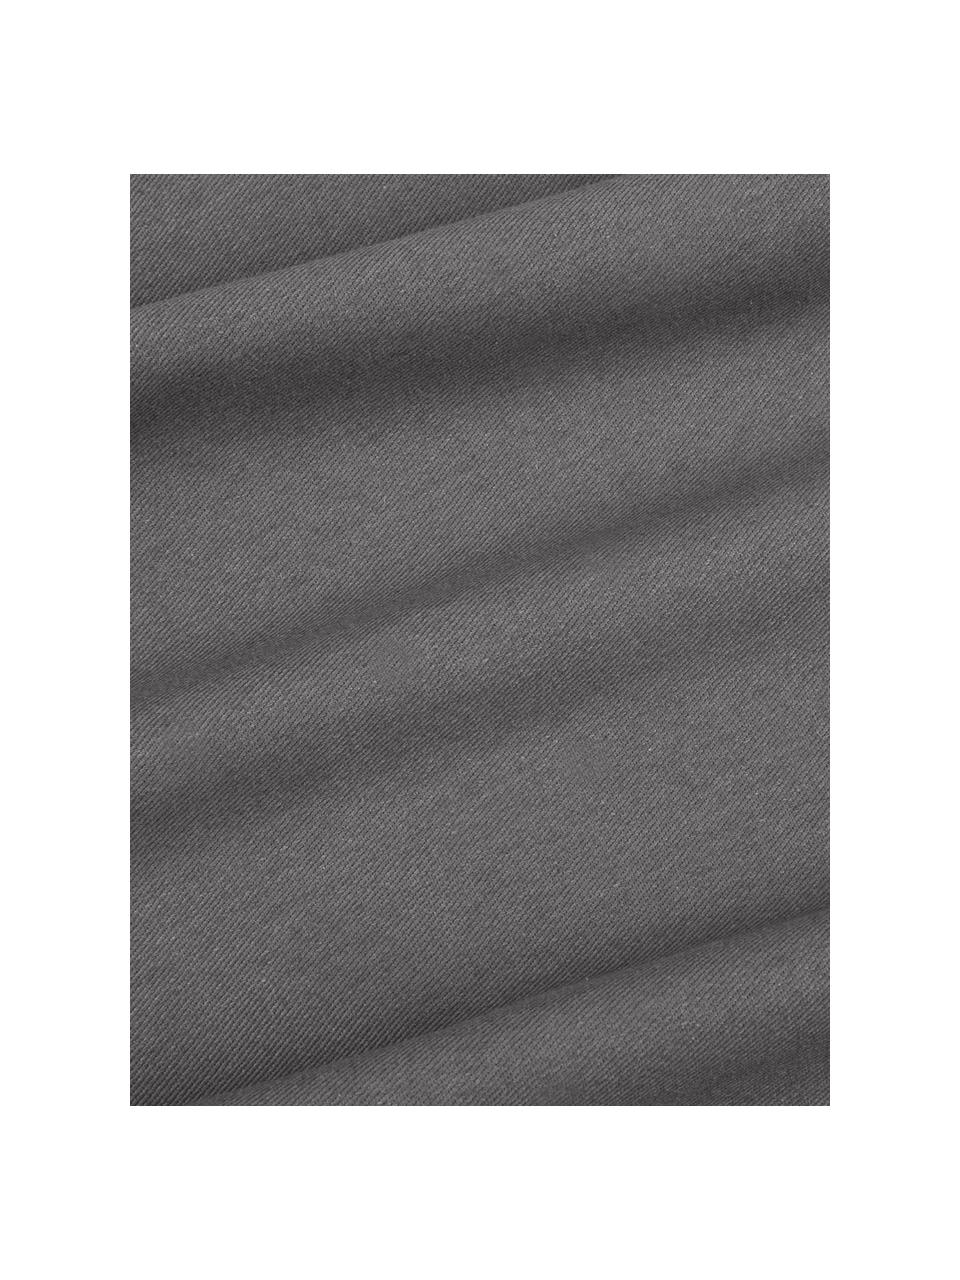 Katoenen kussenhoes Mads in donkergrijs, 100% katoen, Donkergrijs, 30 x 50 cm